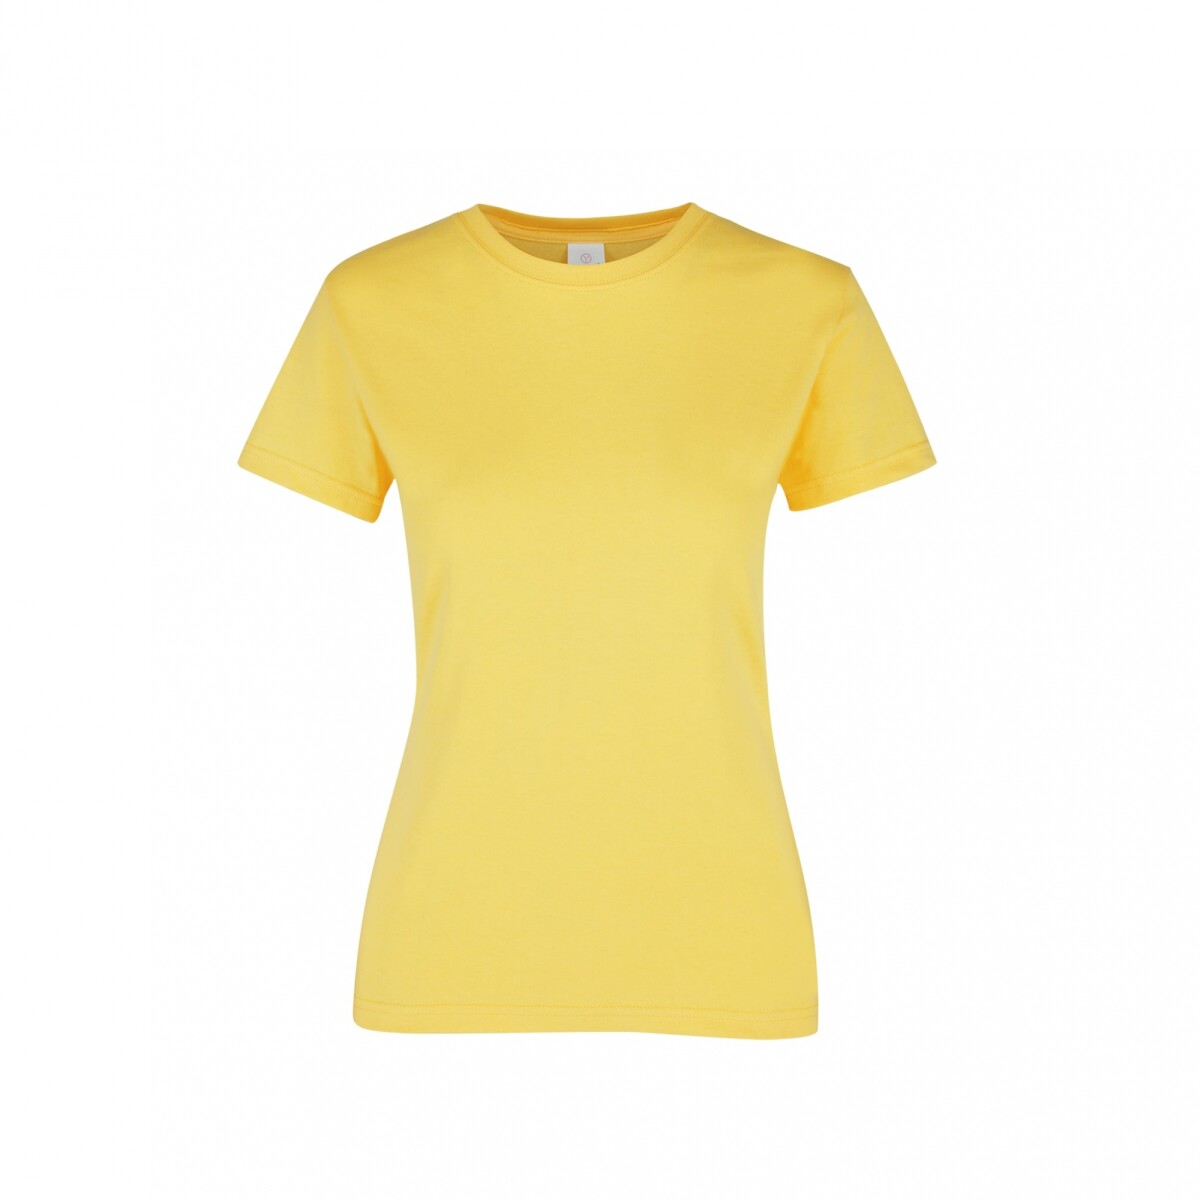 Camiseta a la base dama - Amarillo canario 